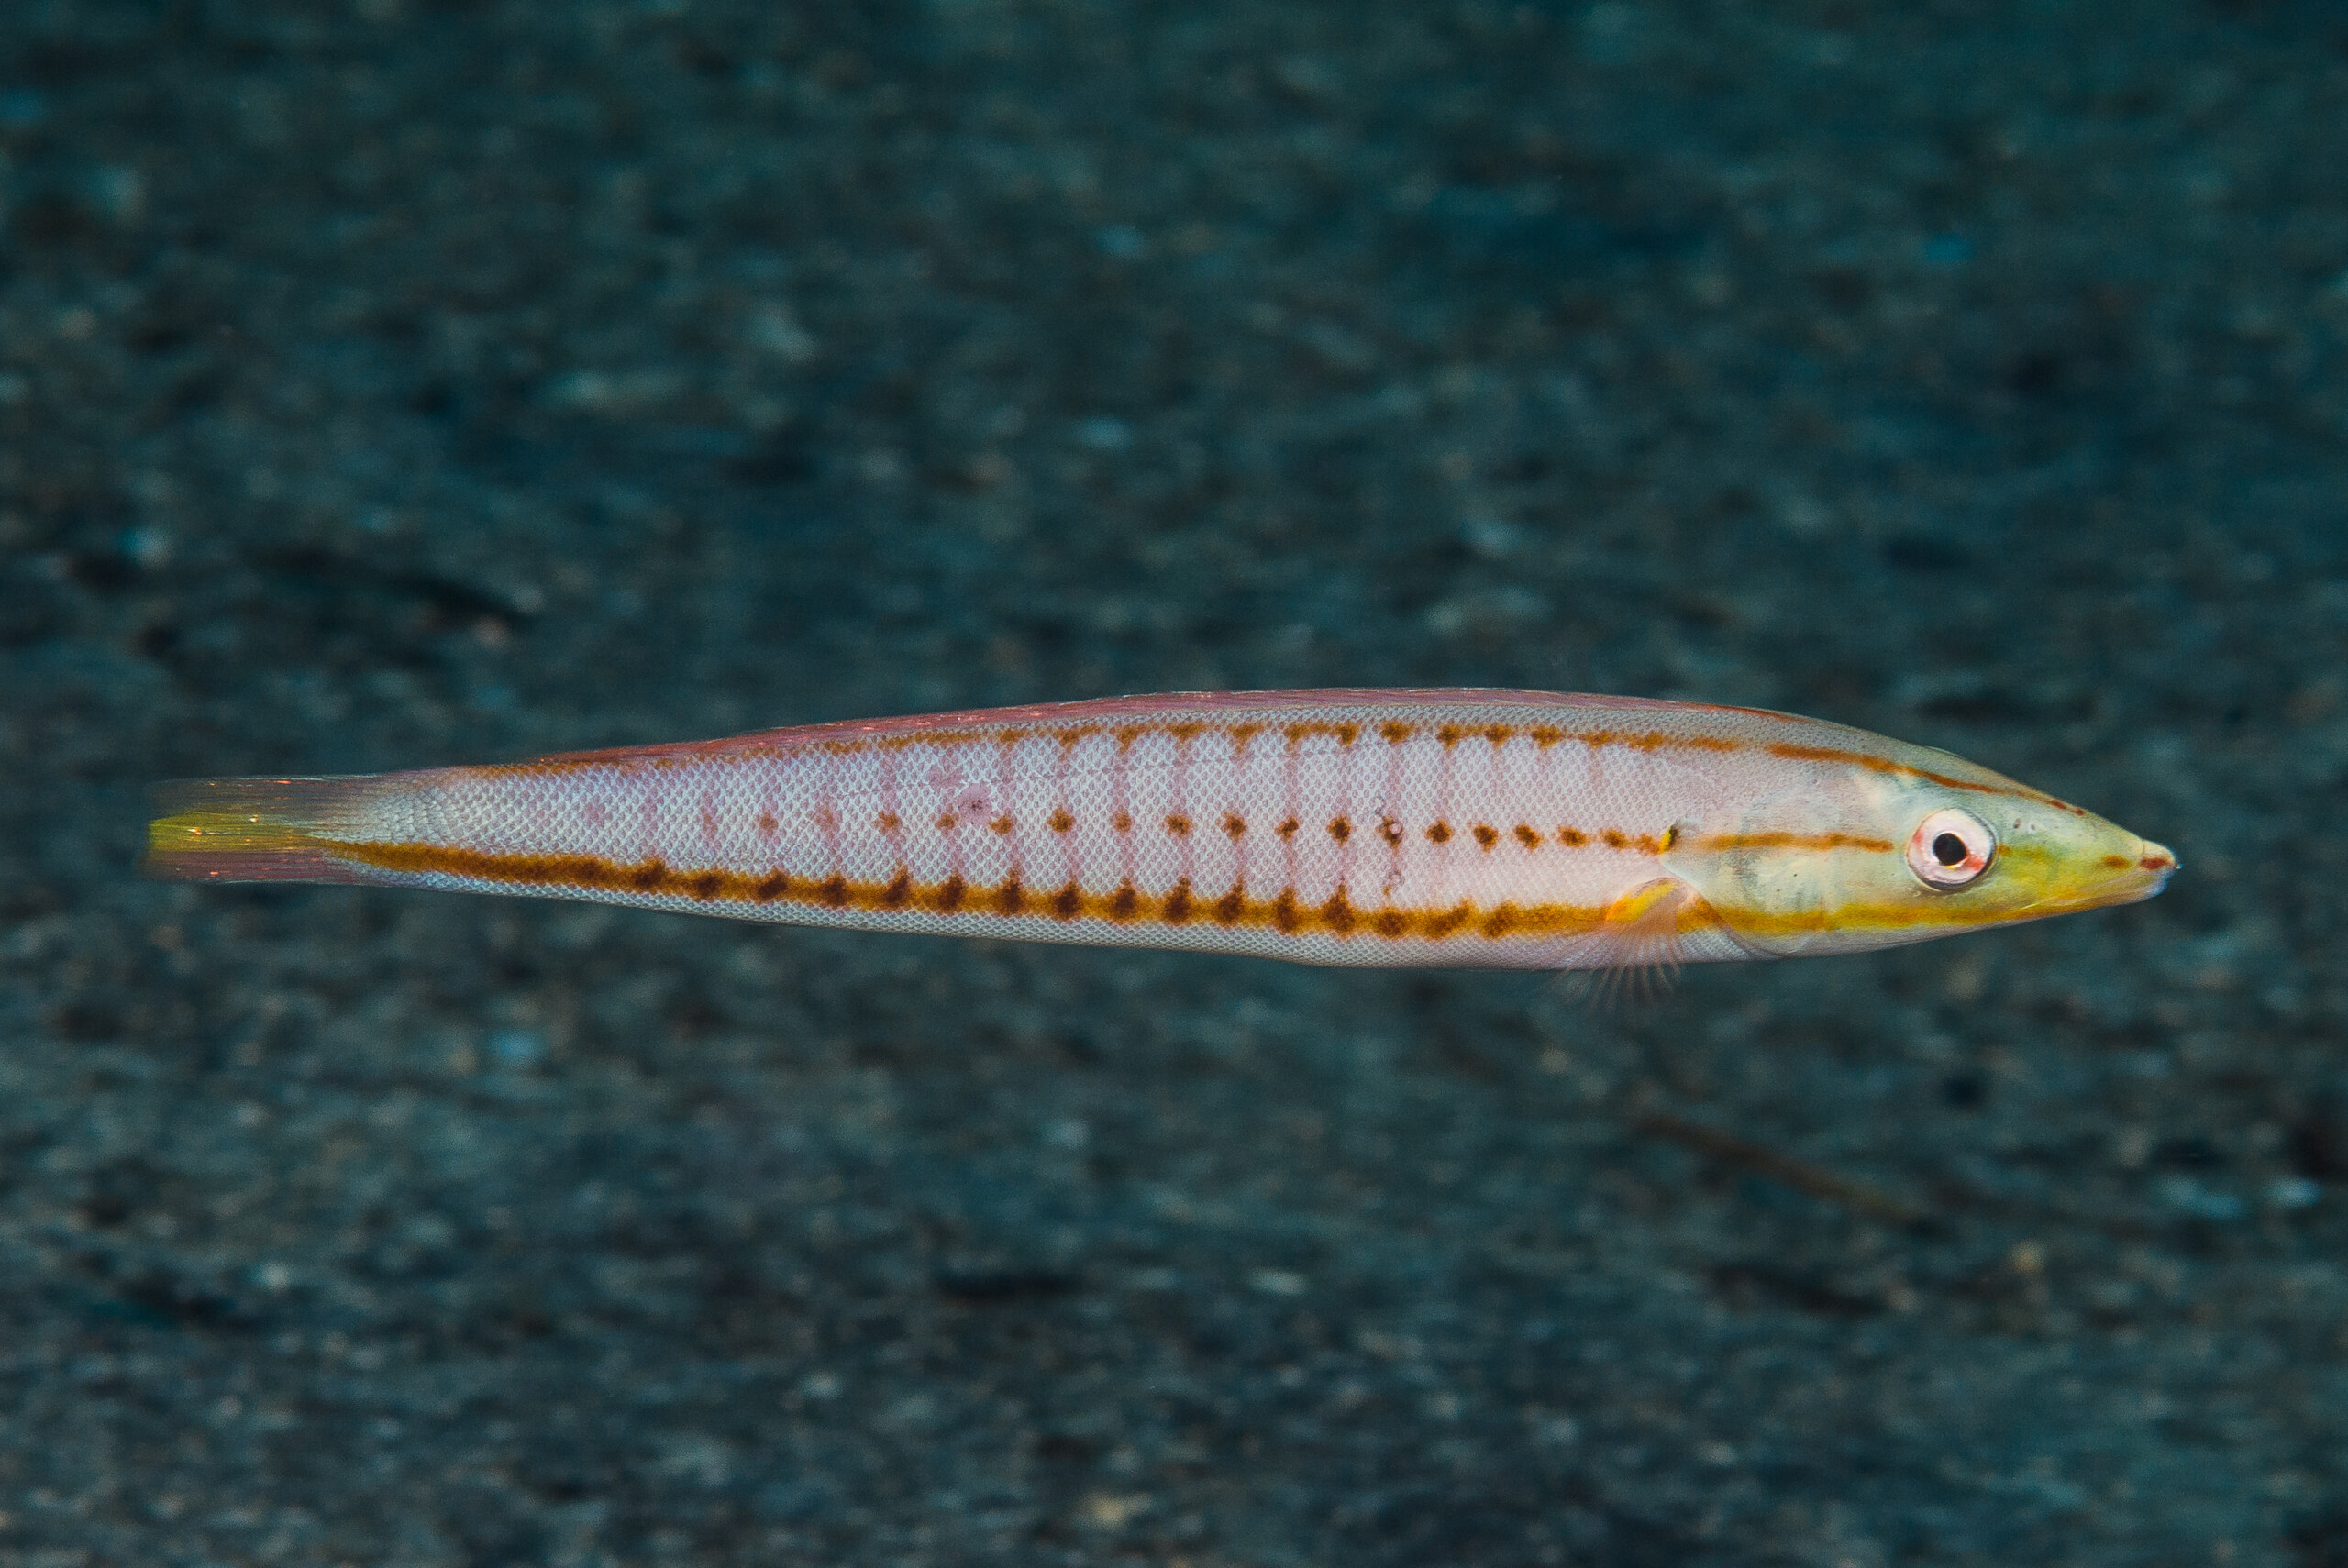 Small Fish Ring with Meena – mrinalinichandra